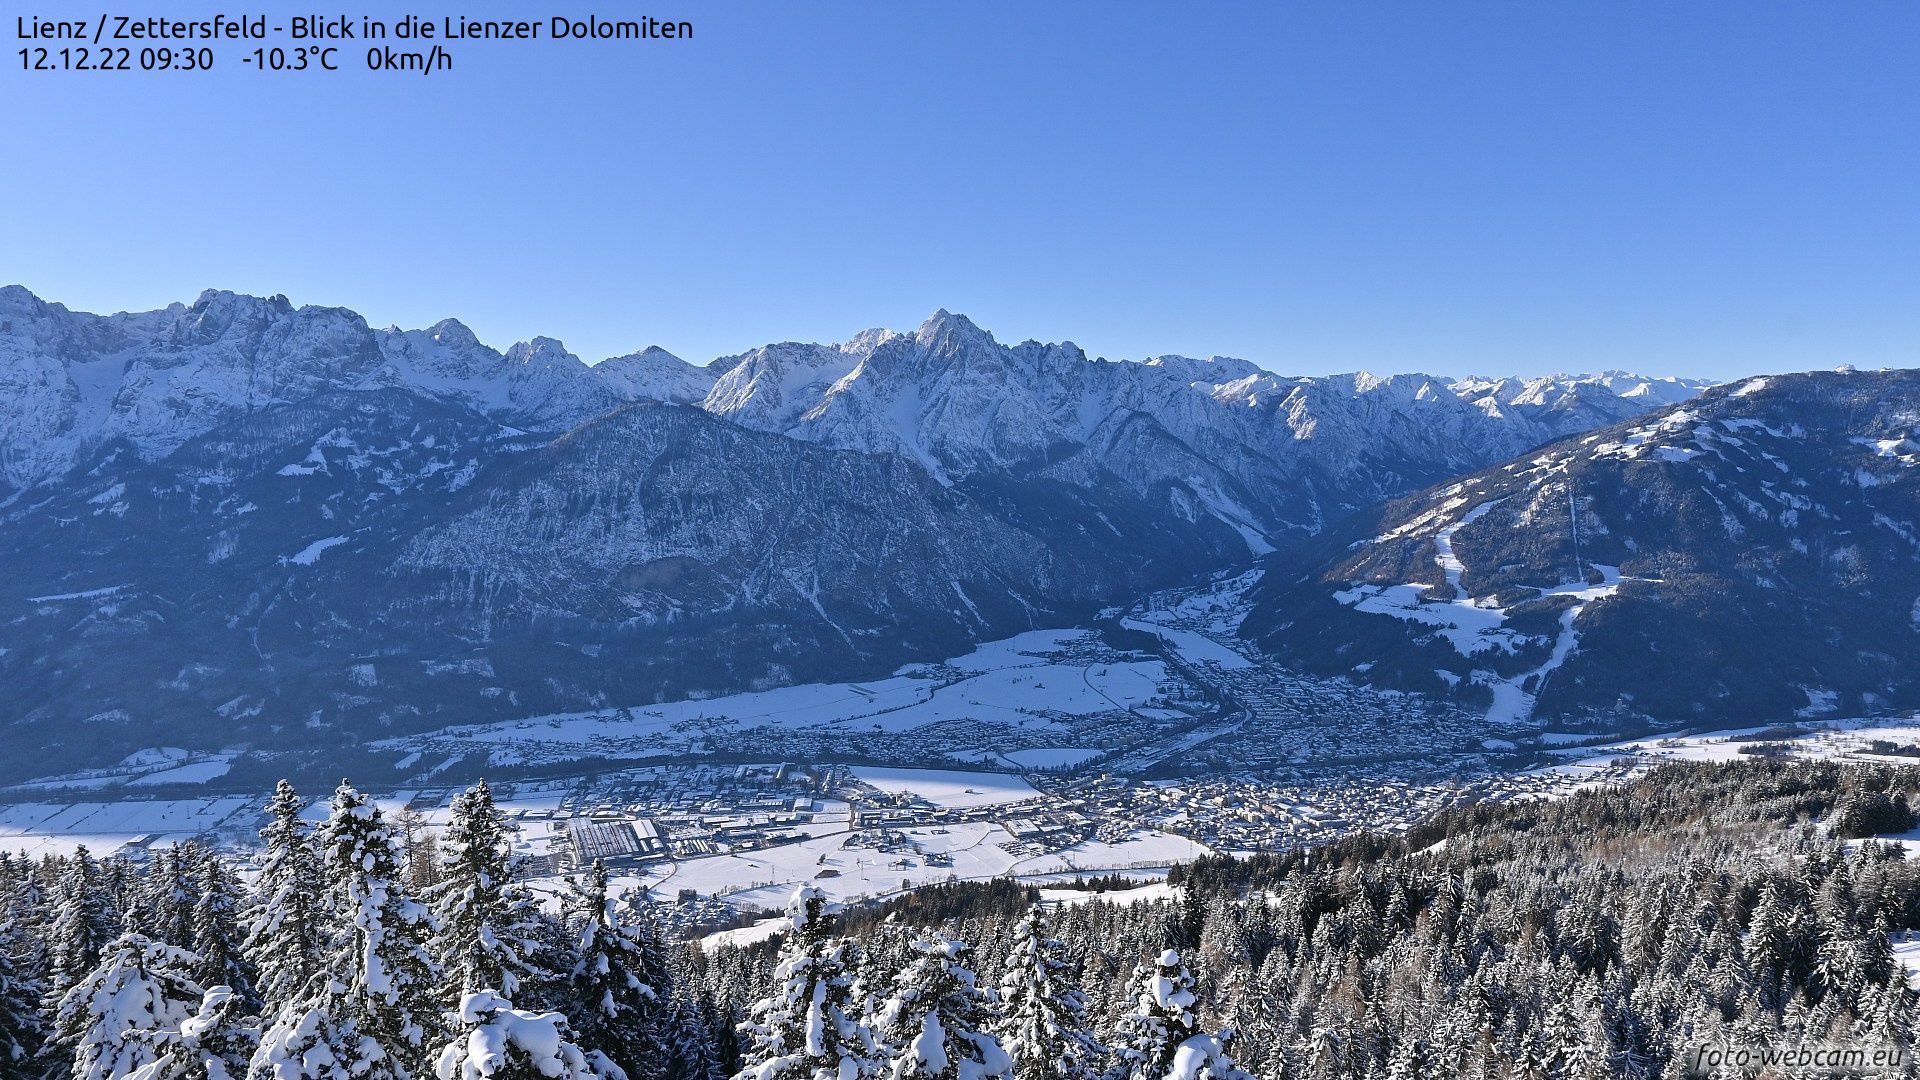 Ook in Oostenrijk een ijskoude start van de dag (foto-webcam.eu)